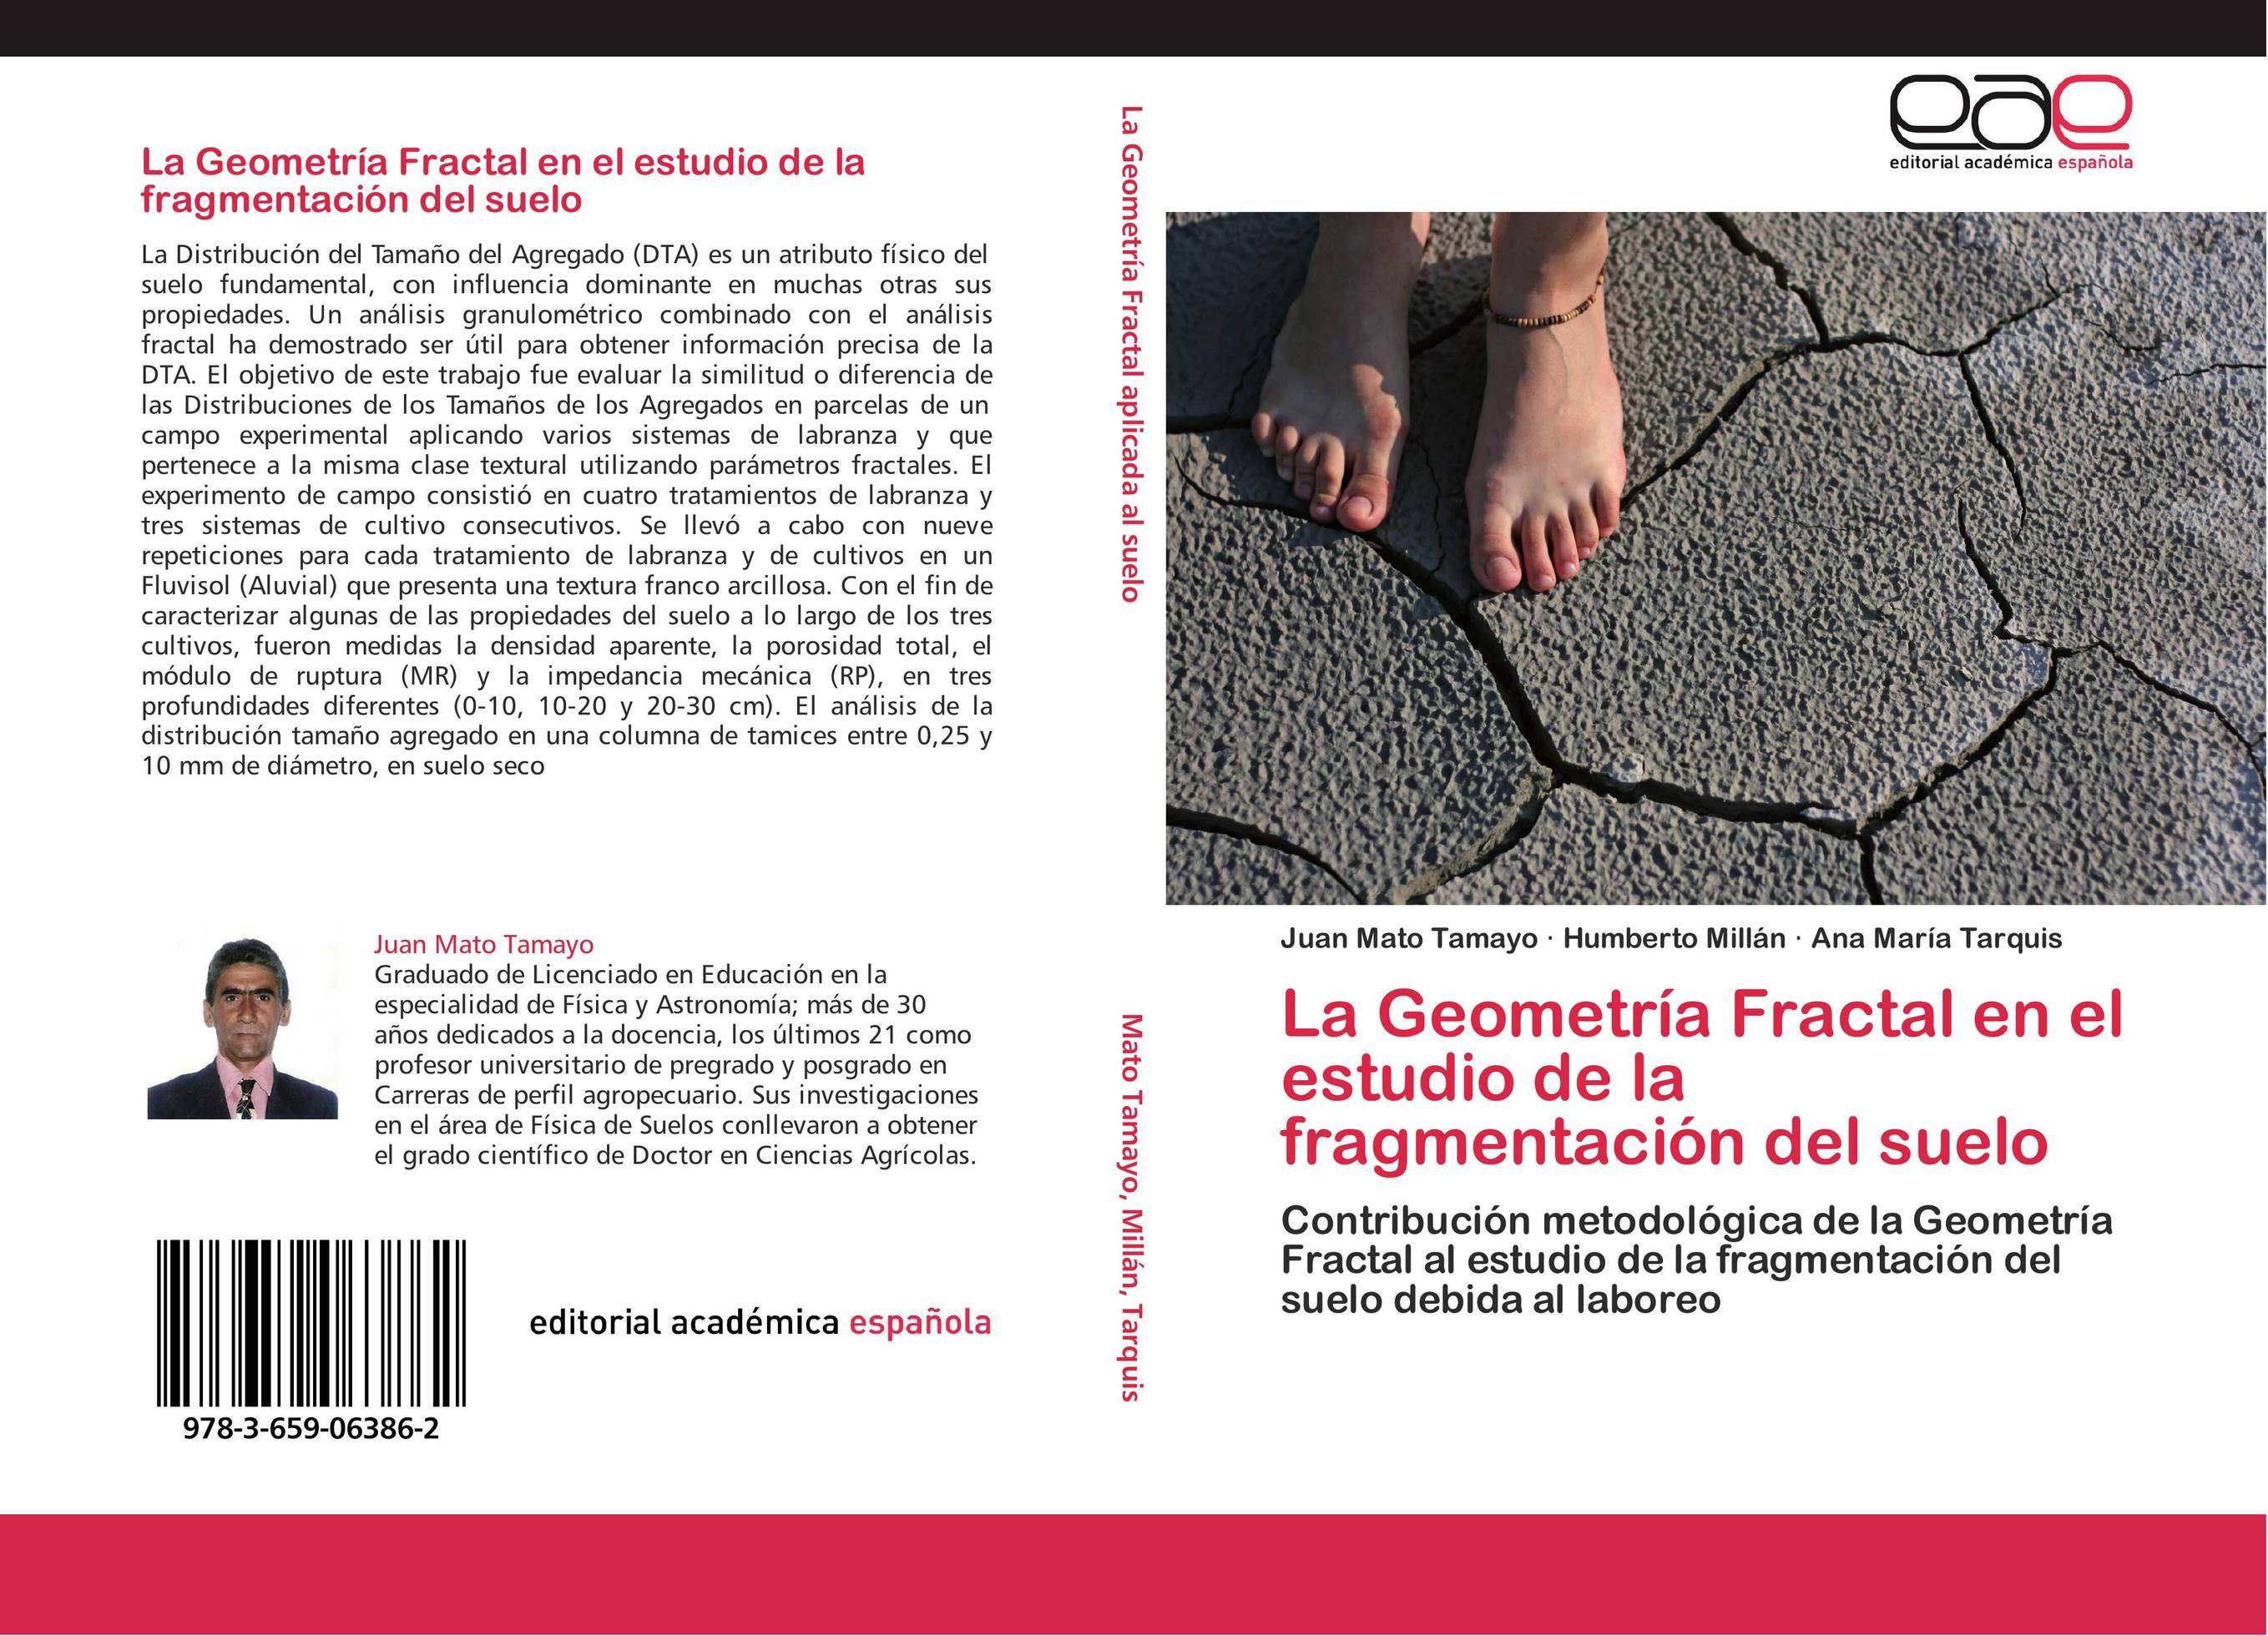 La Geometría Fractal en el estudio de la fragmentación del suelo